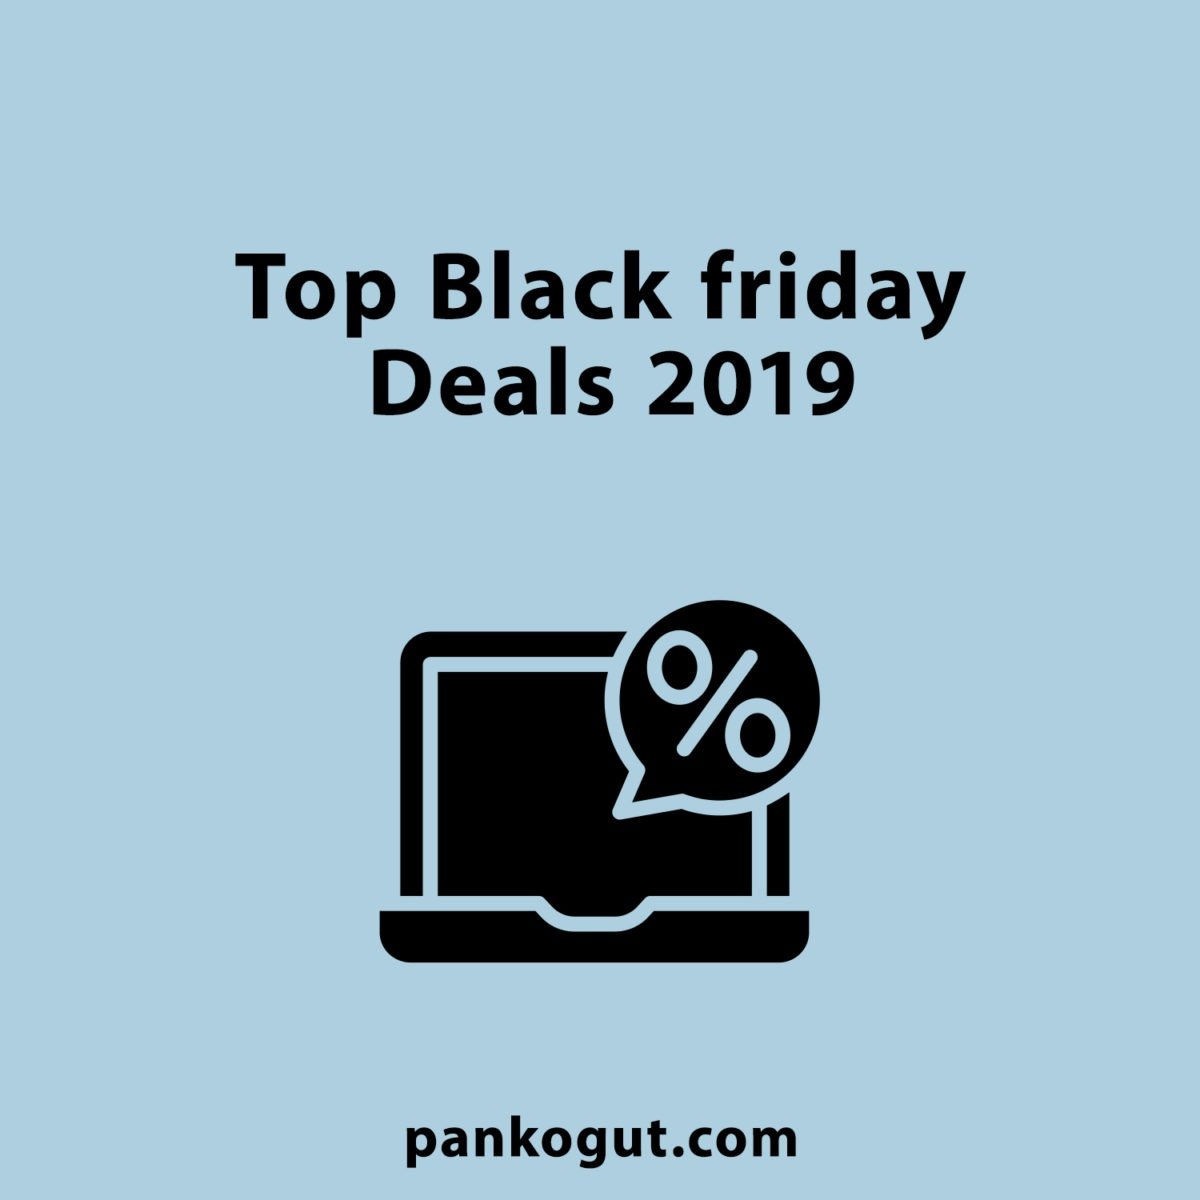 Top Black Friday Deals 2019